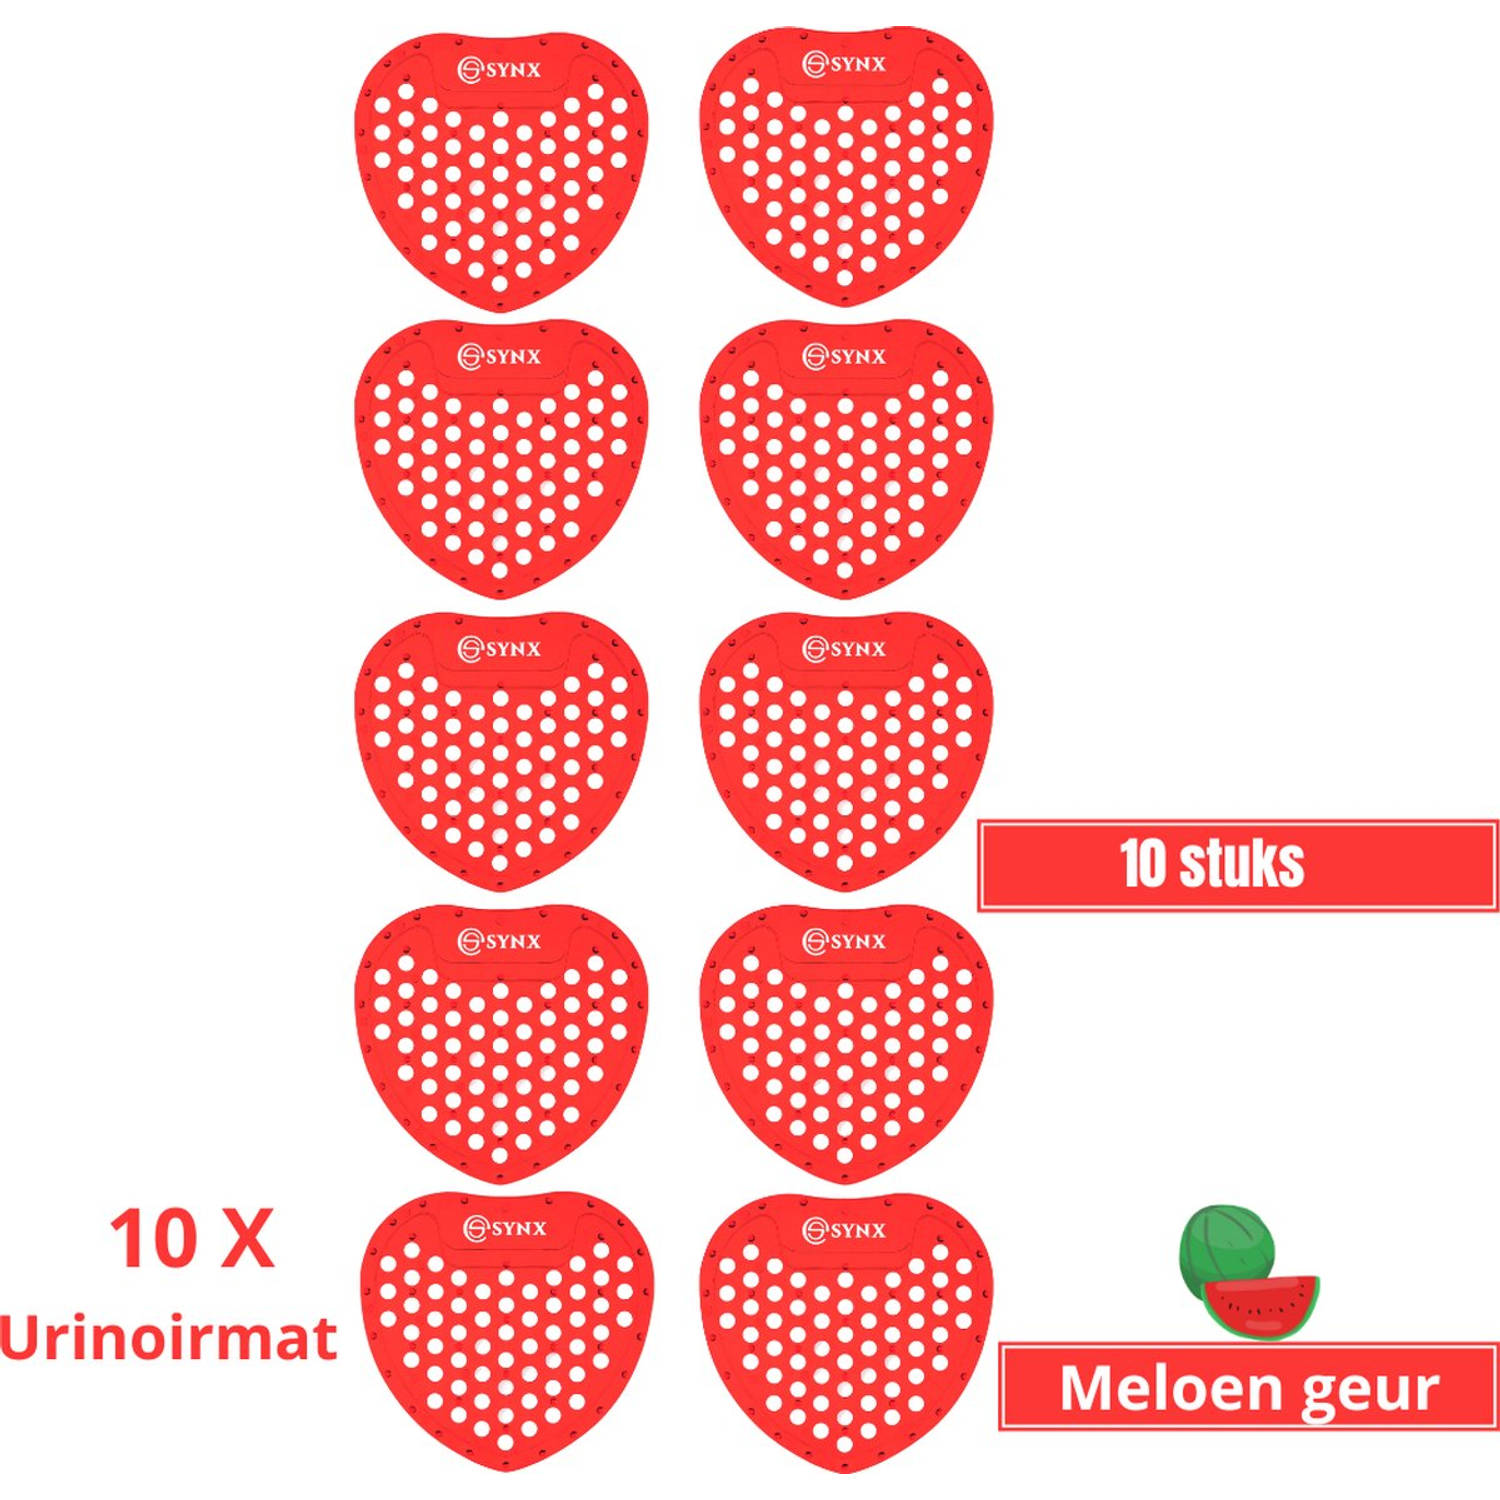 Synx Tools Urinoirmatje met meloen Geur Urinoirmatten 10 stuks voordeelverpakking Anti spat mat WC T